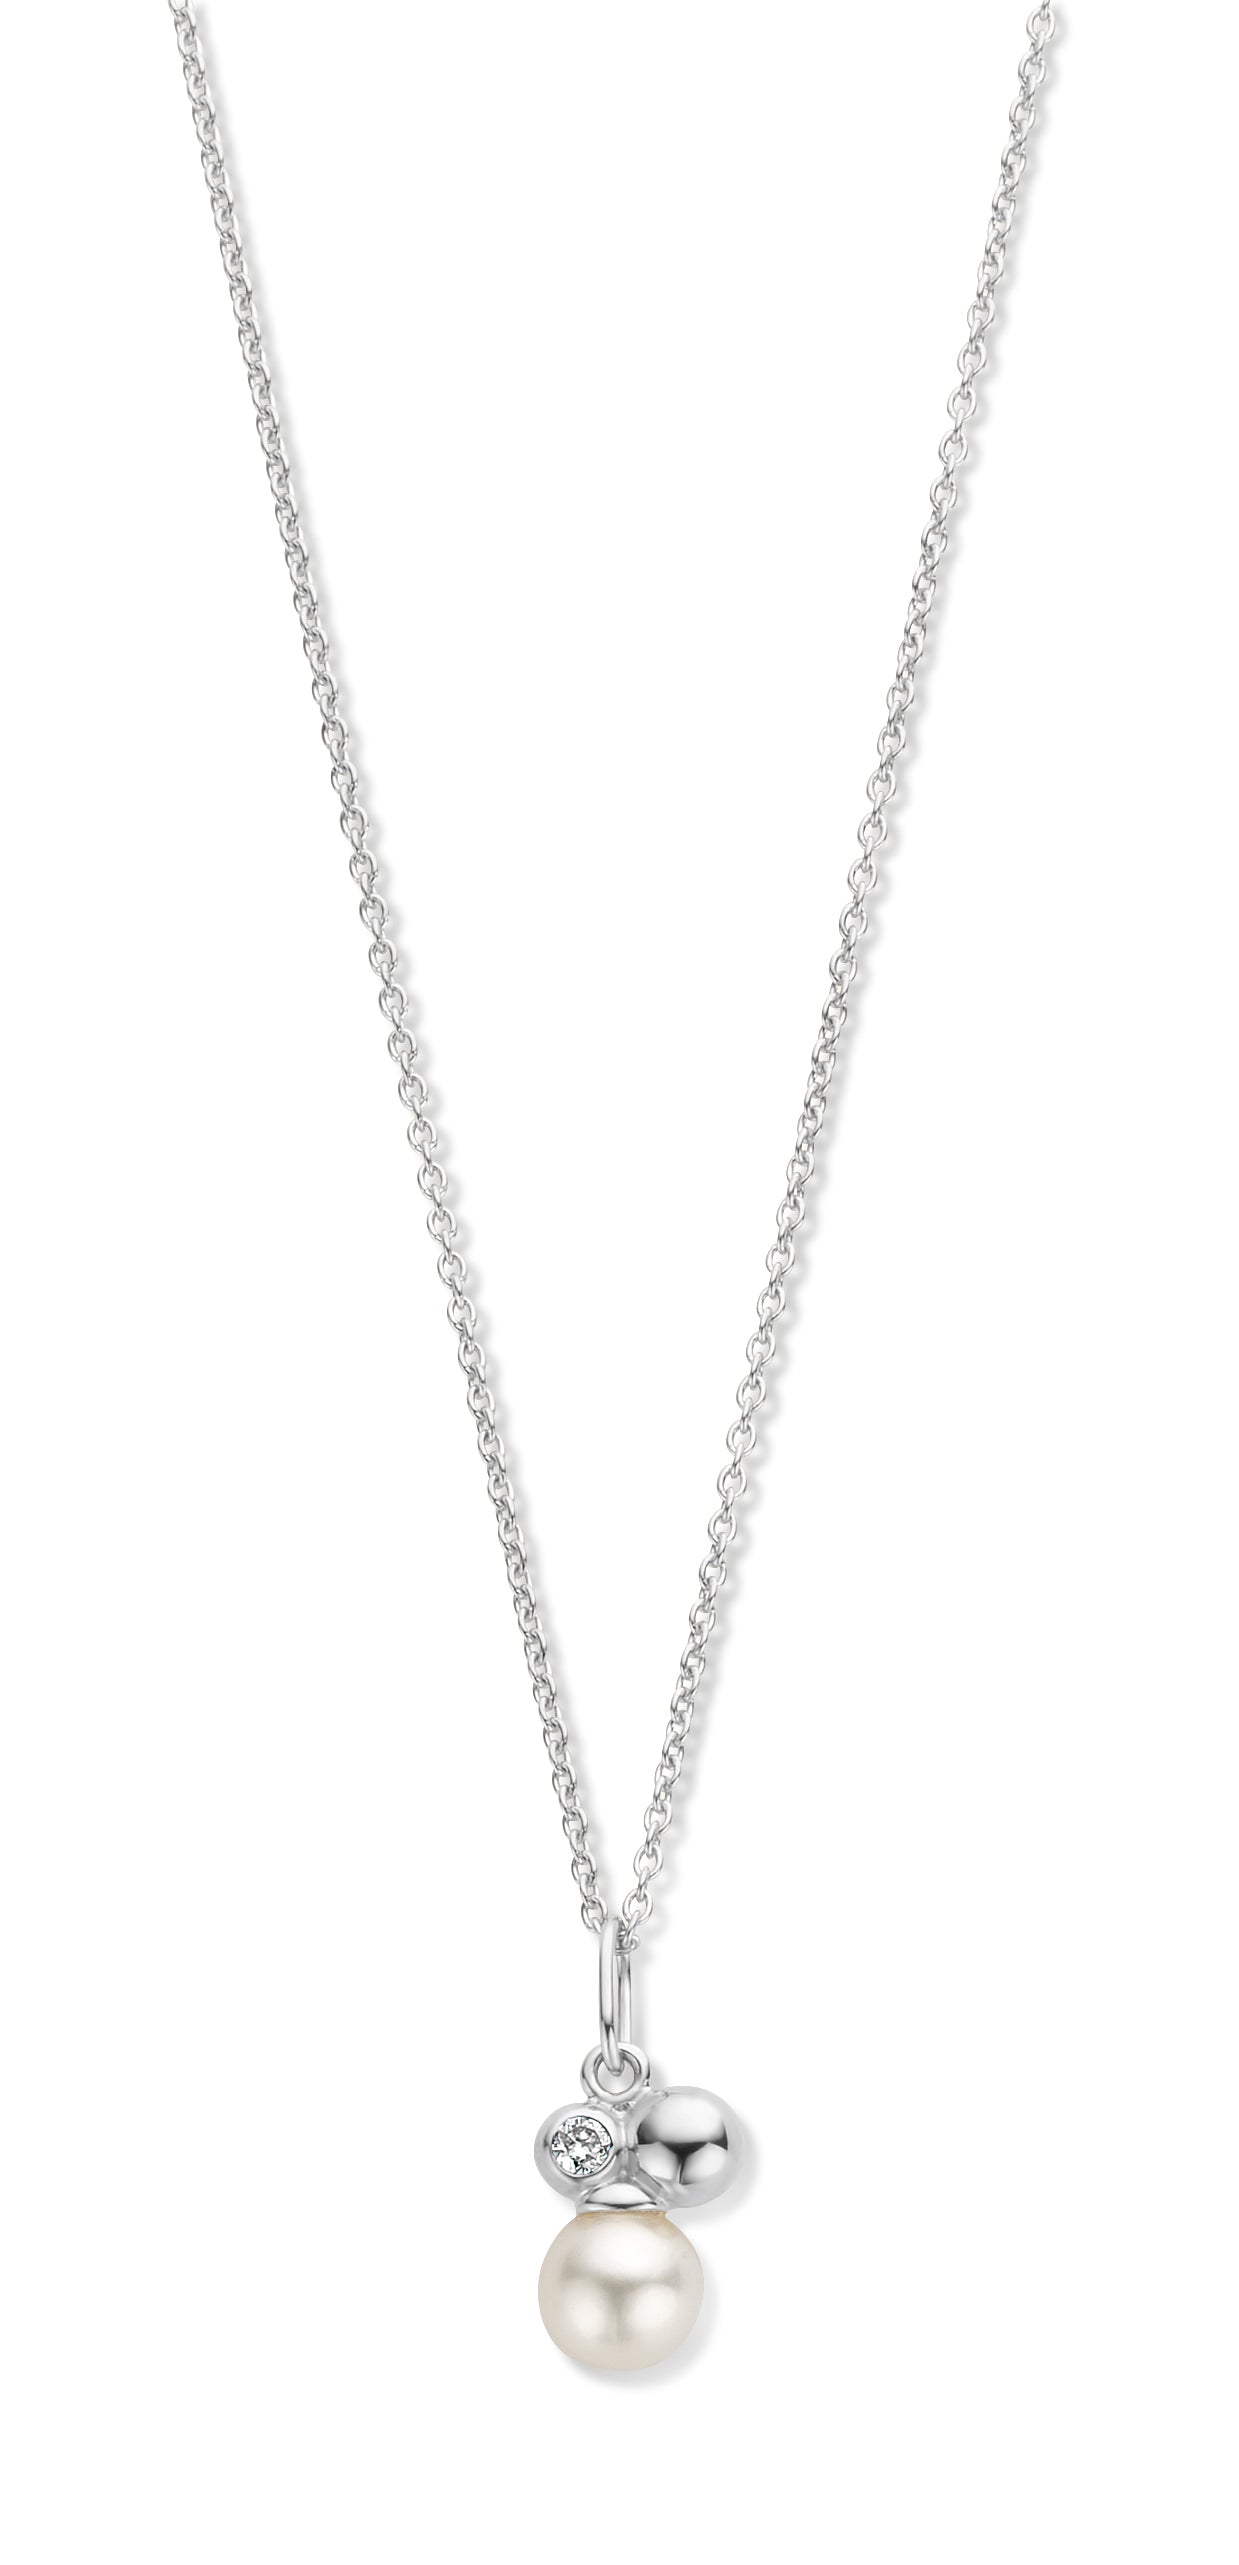 Asia halskæde 45 cm - 14 kt. hvidguld med 0,02 CT brilliantslebne diamanter-1